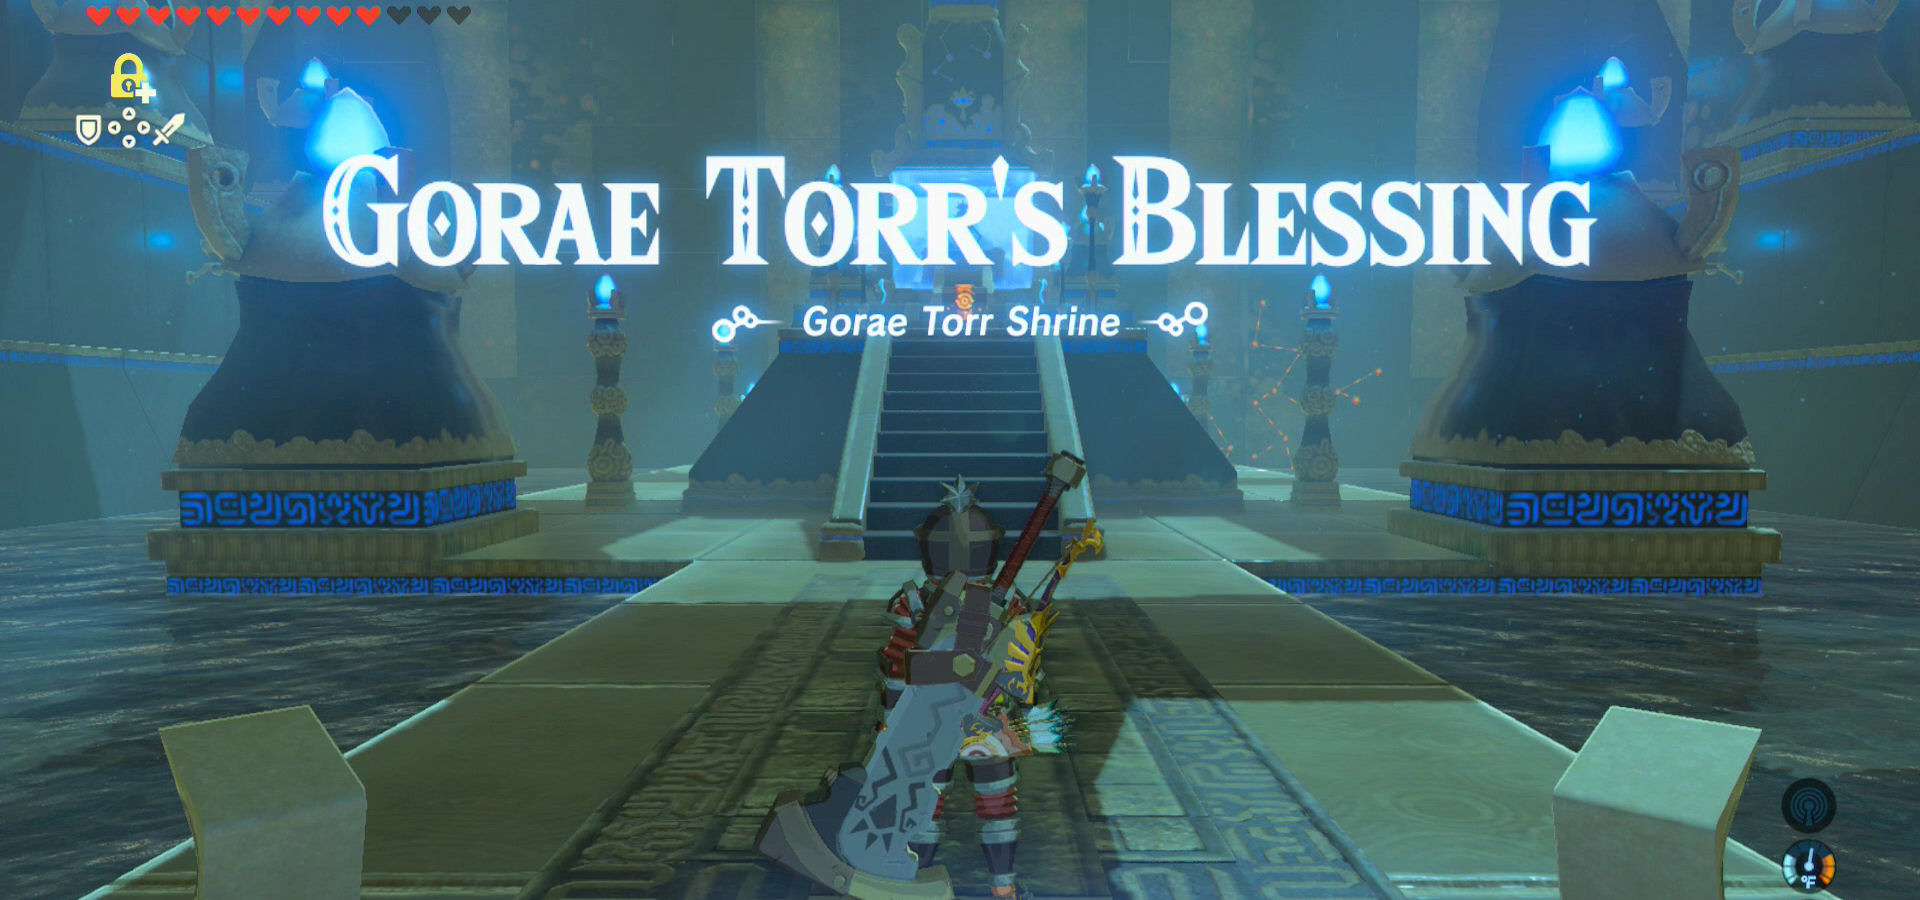 Gorae torr shrine